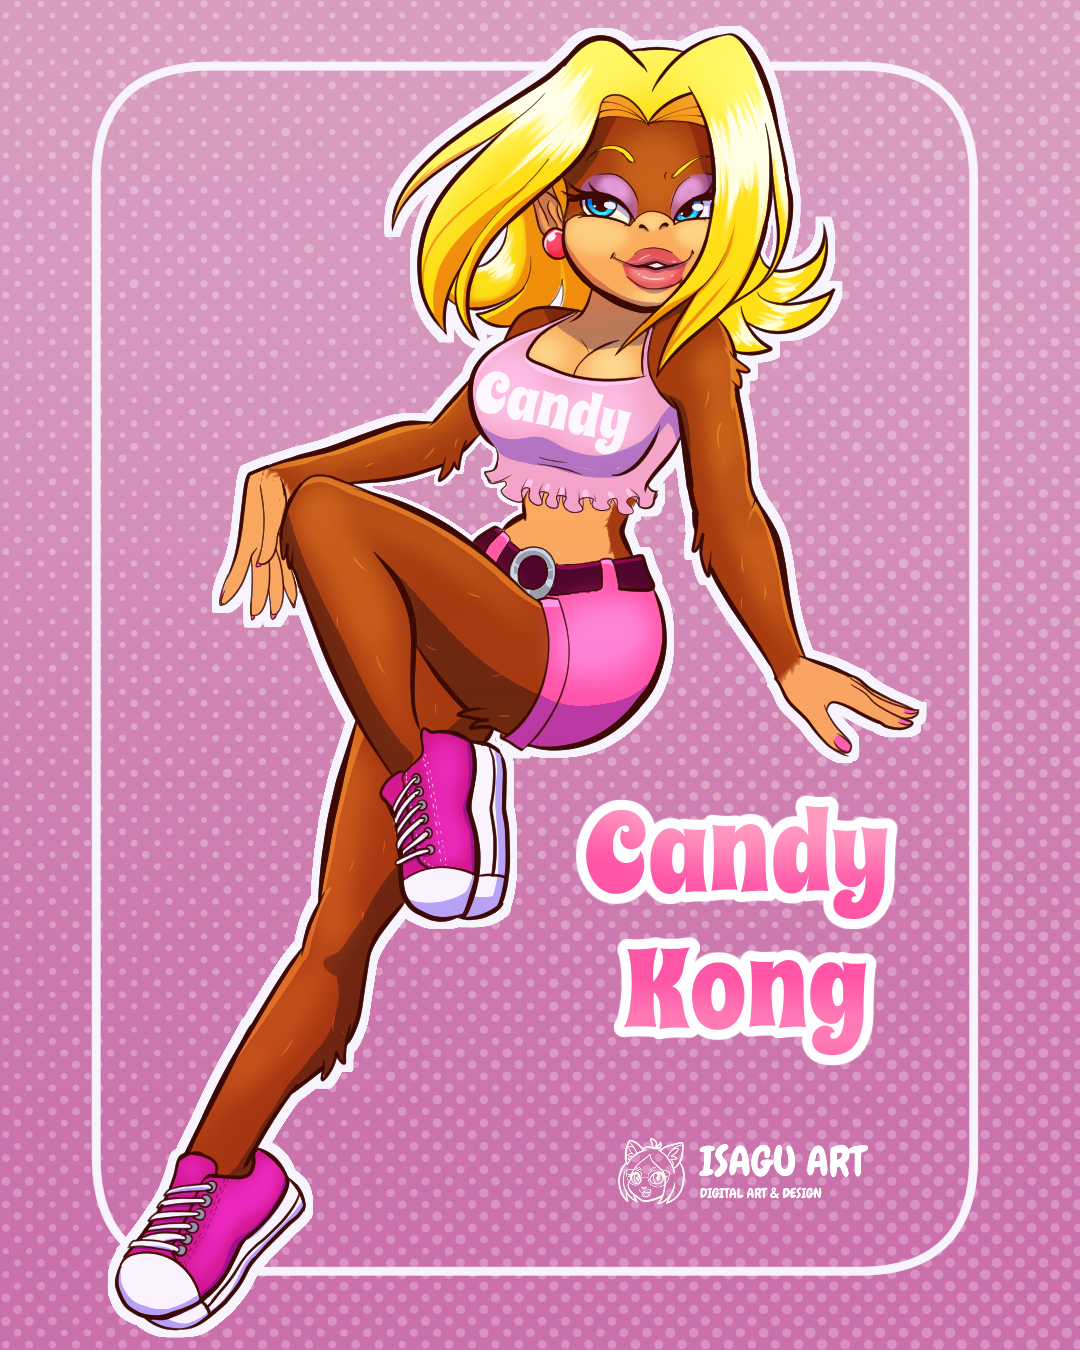 Candy Kong Hot 